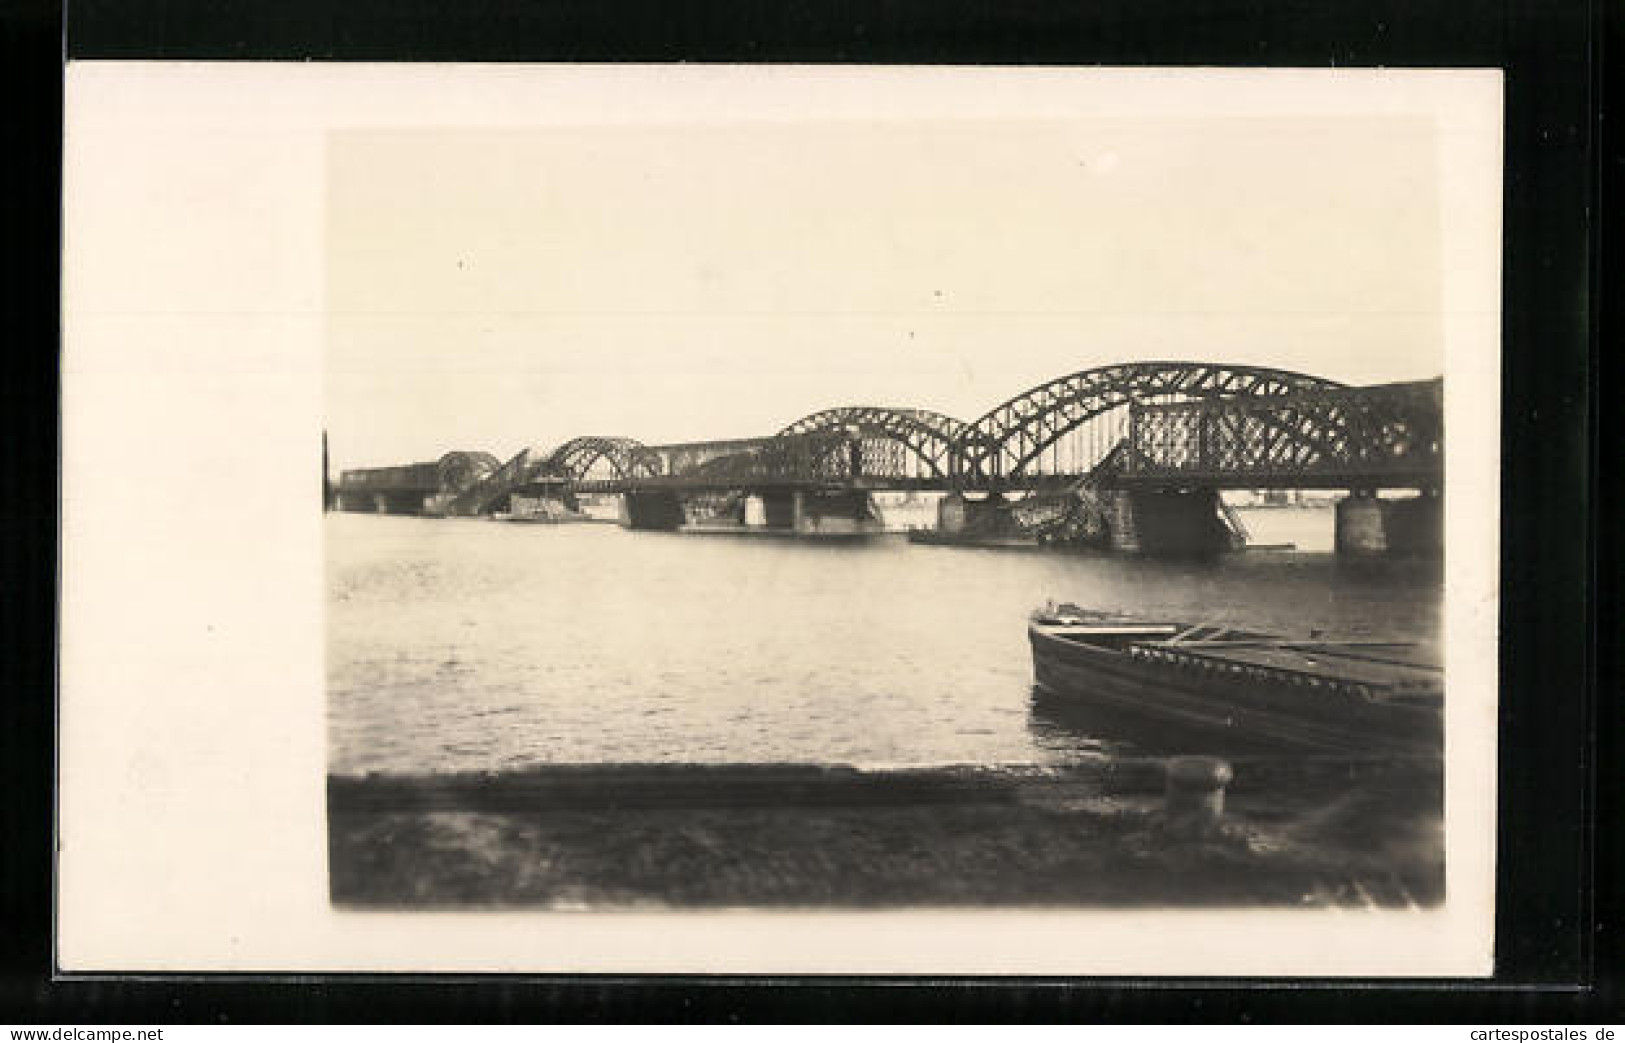 AK Riga, Wasserpartie Mit Bogenbrücke  - Lettonie